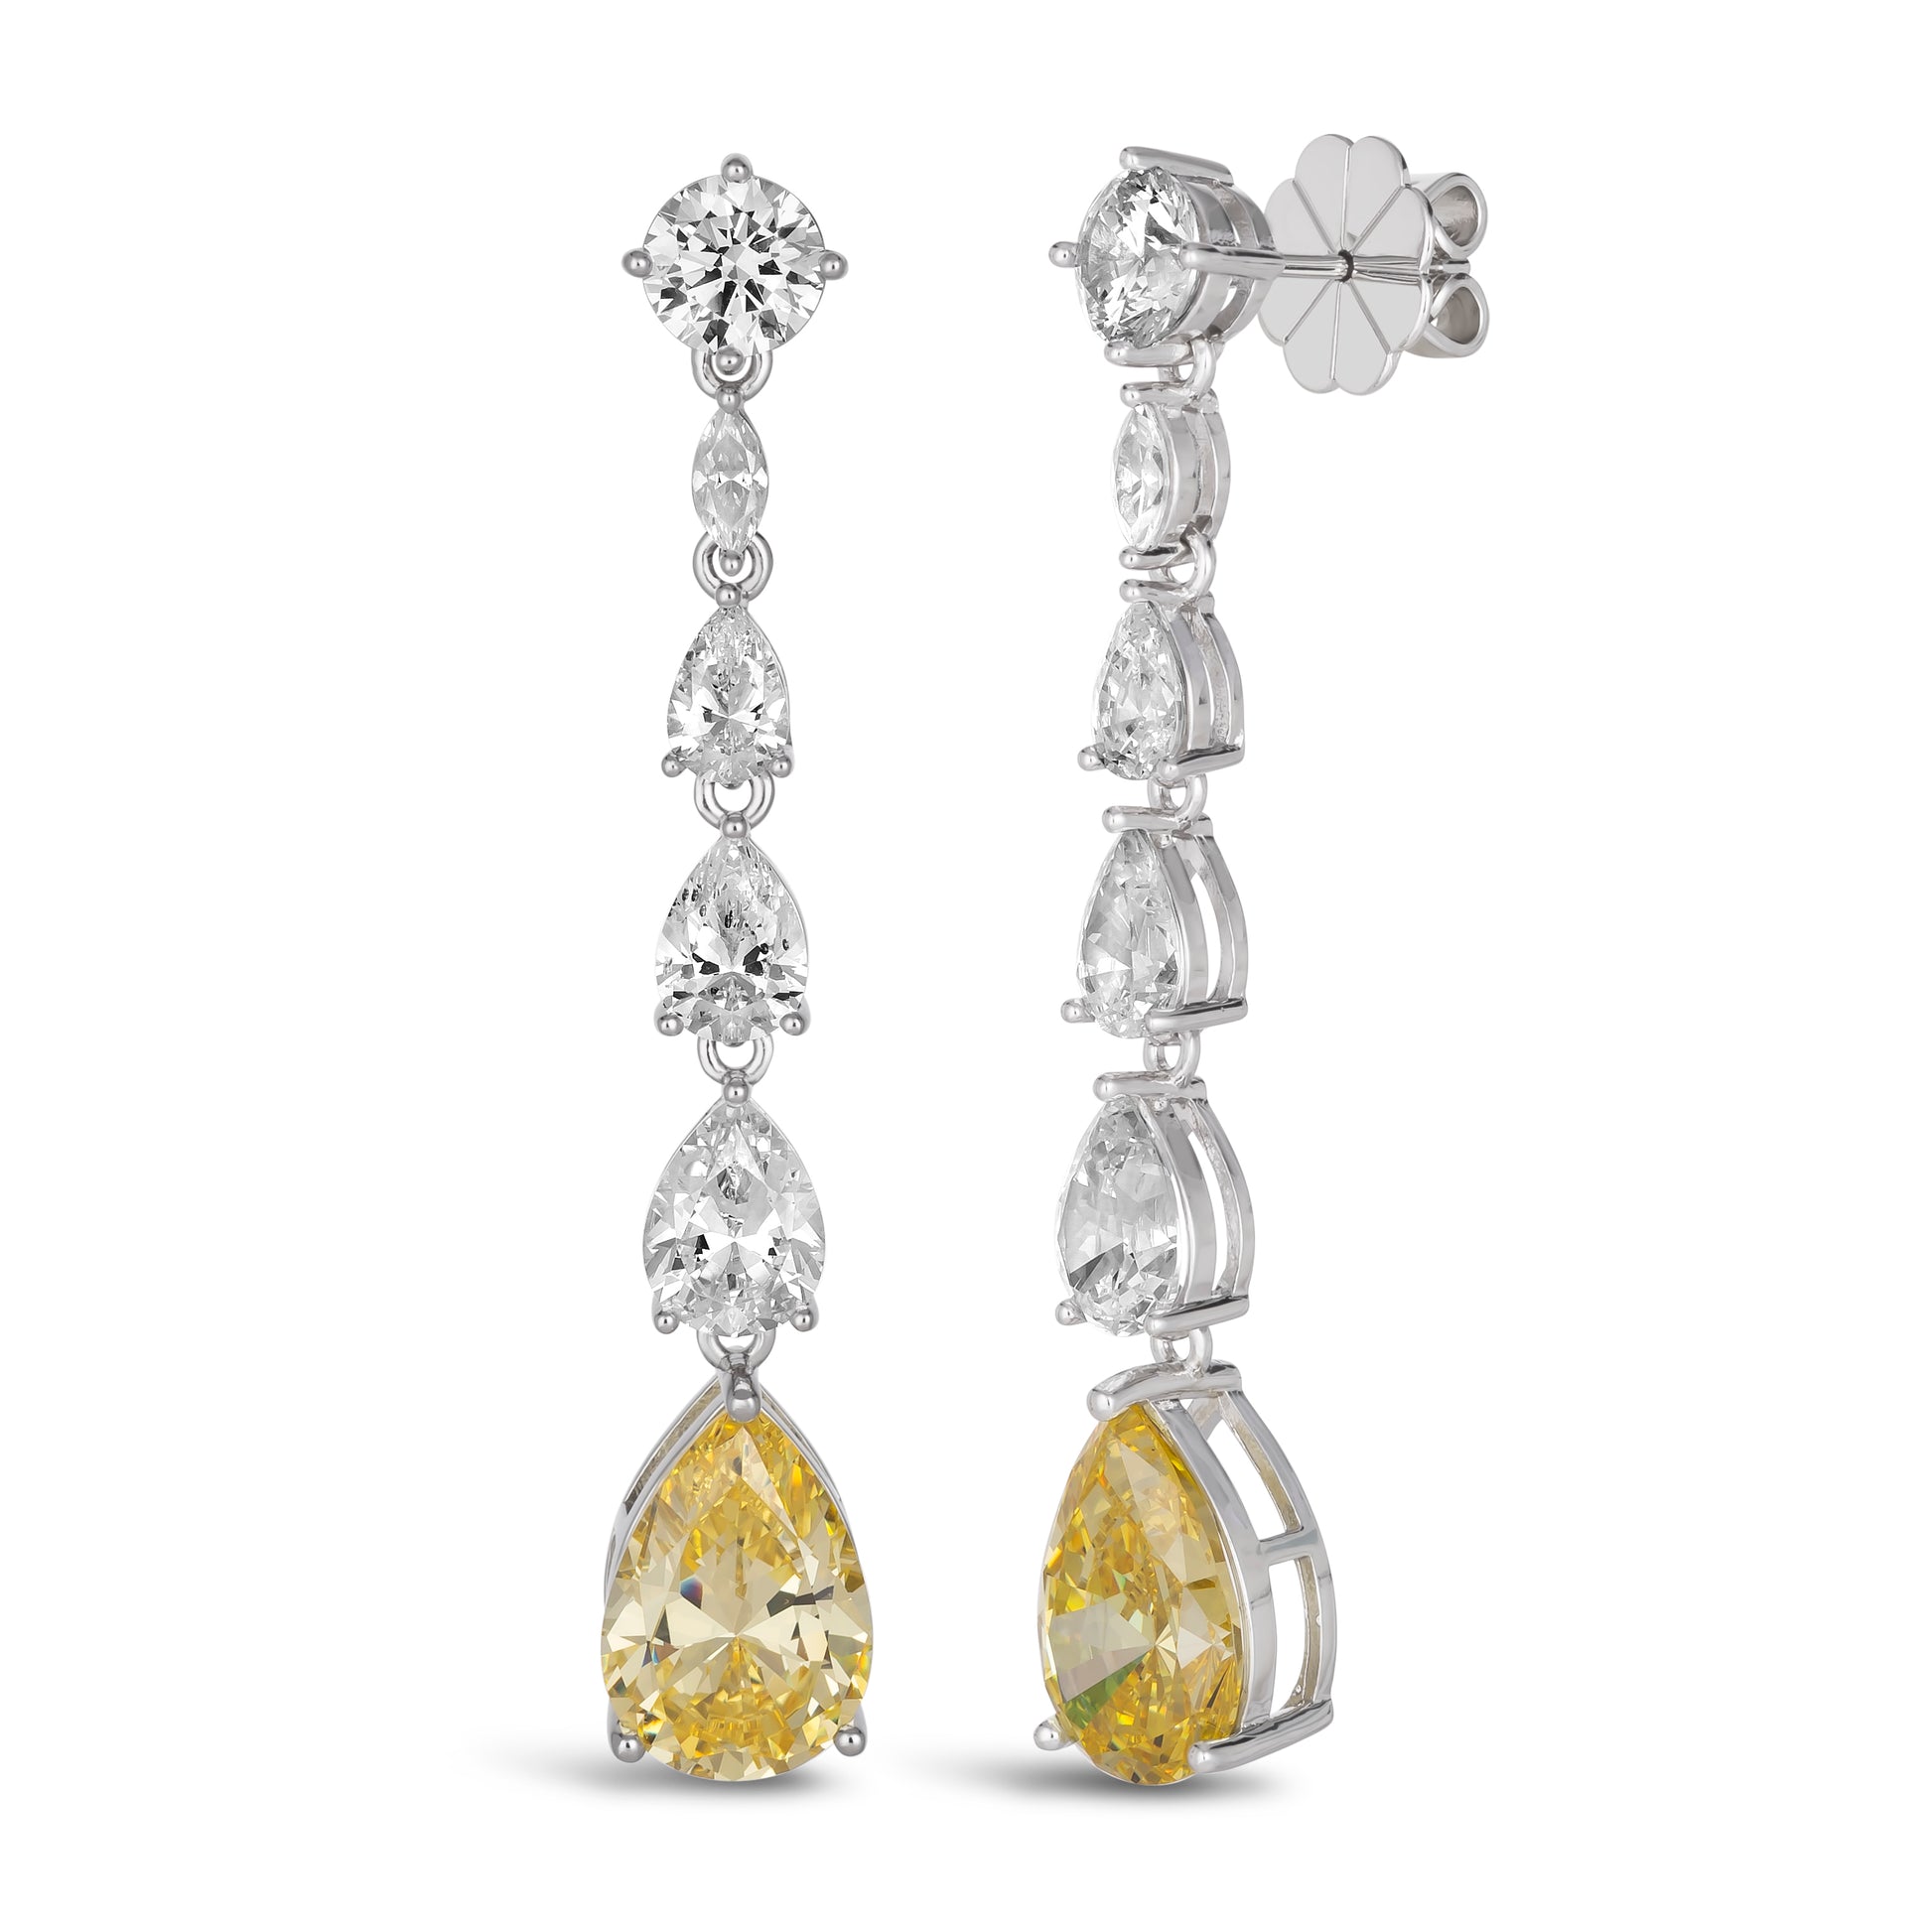 Elizabeth 24 Canary Yellow Earrings - Anna Zuckerman Luxury Earrings